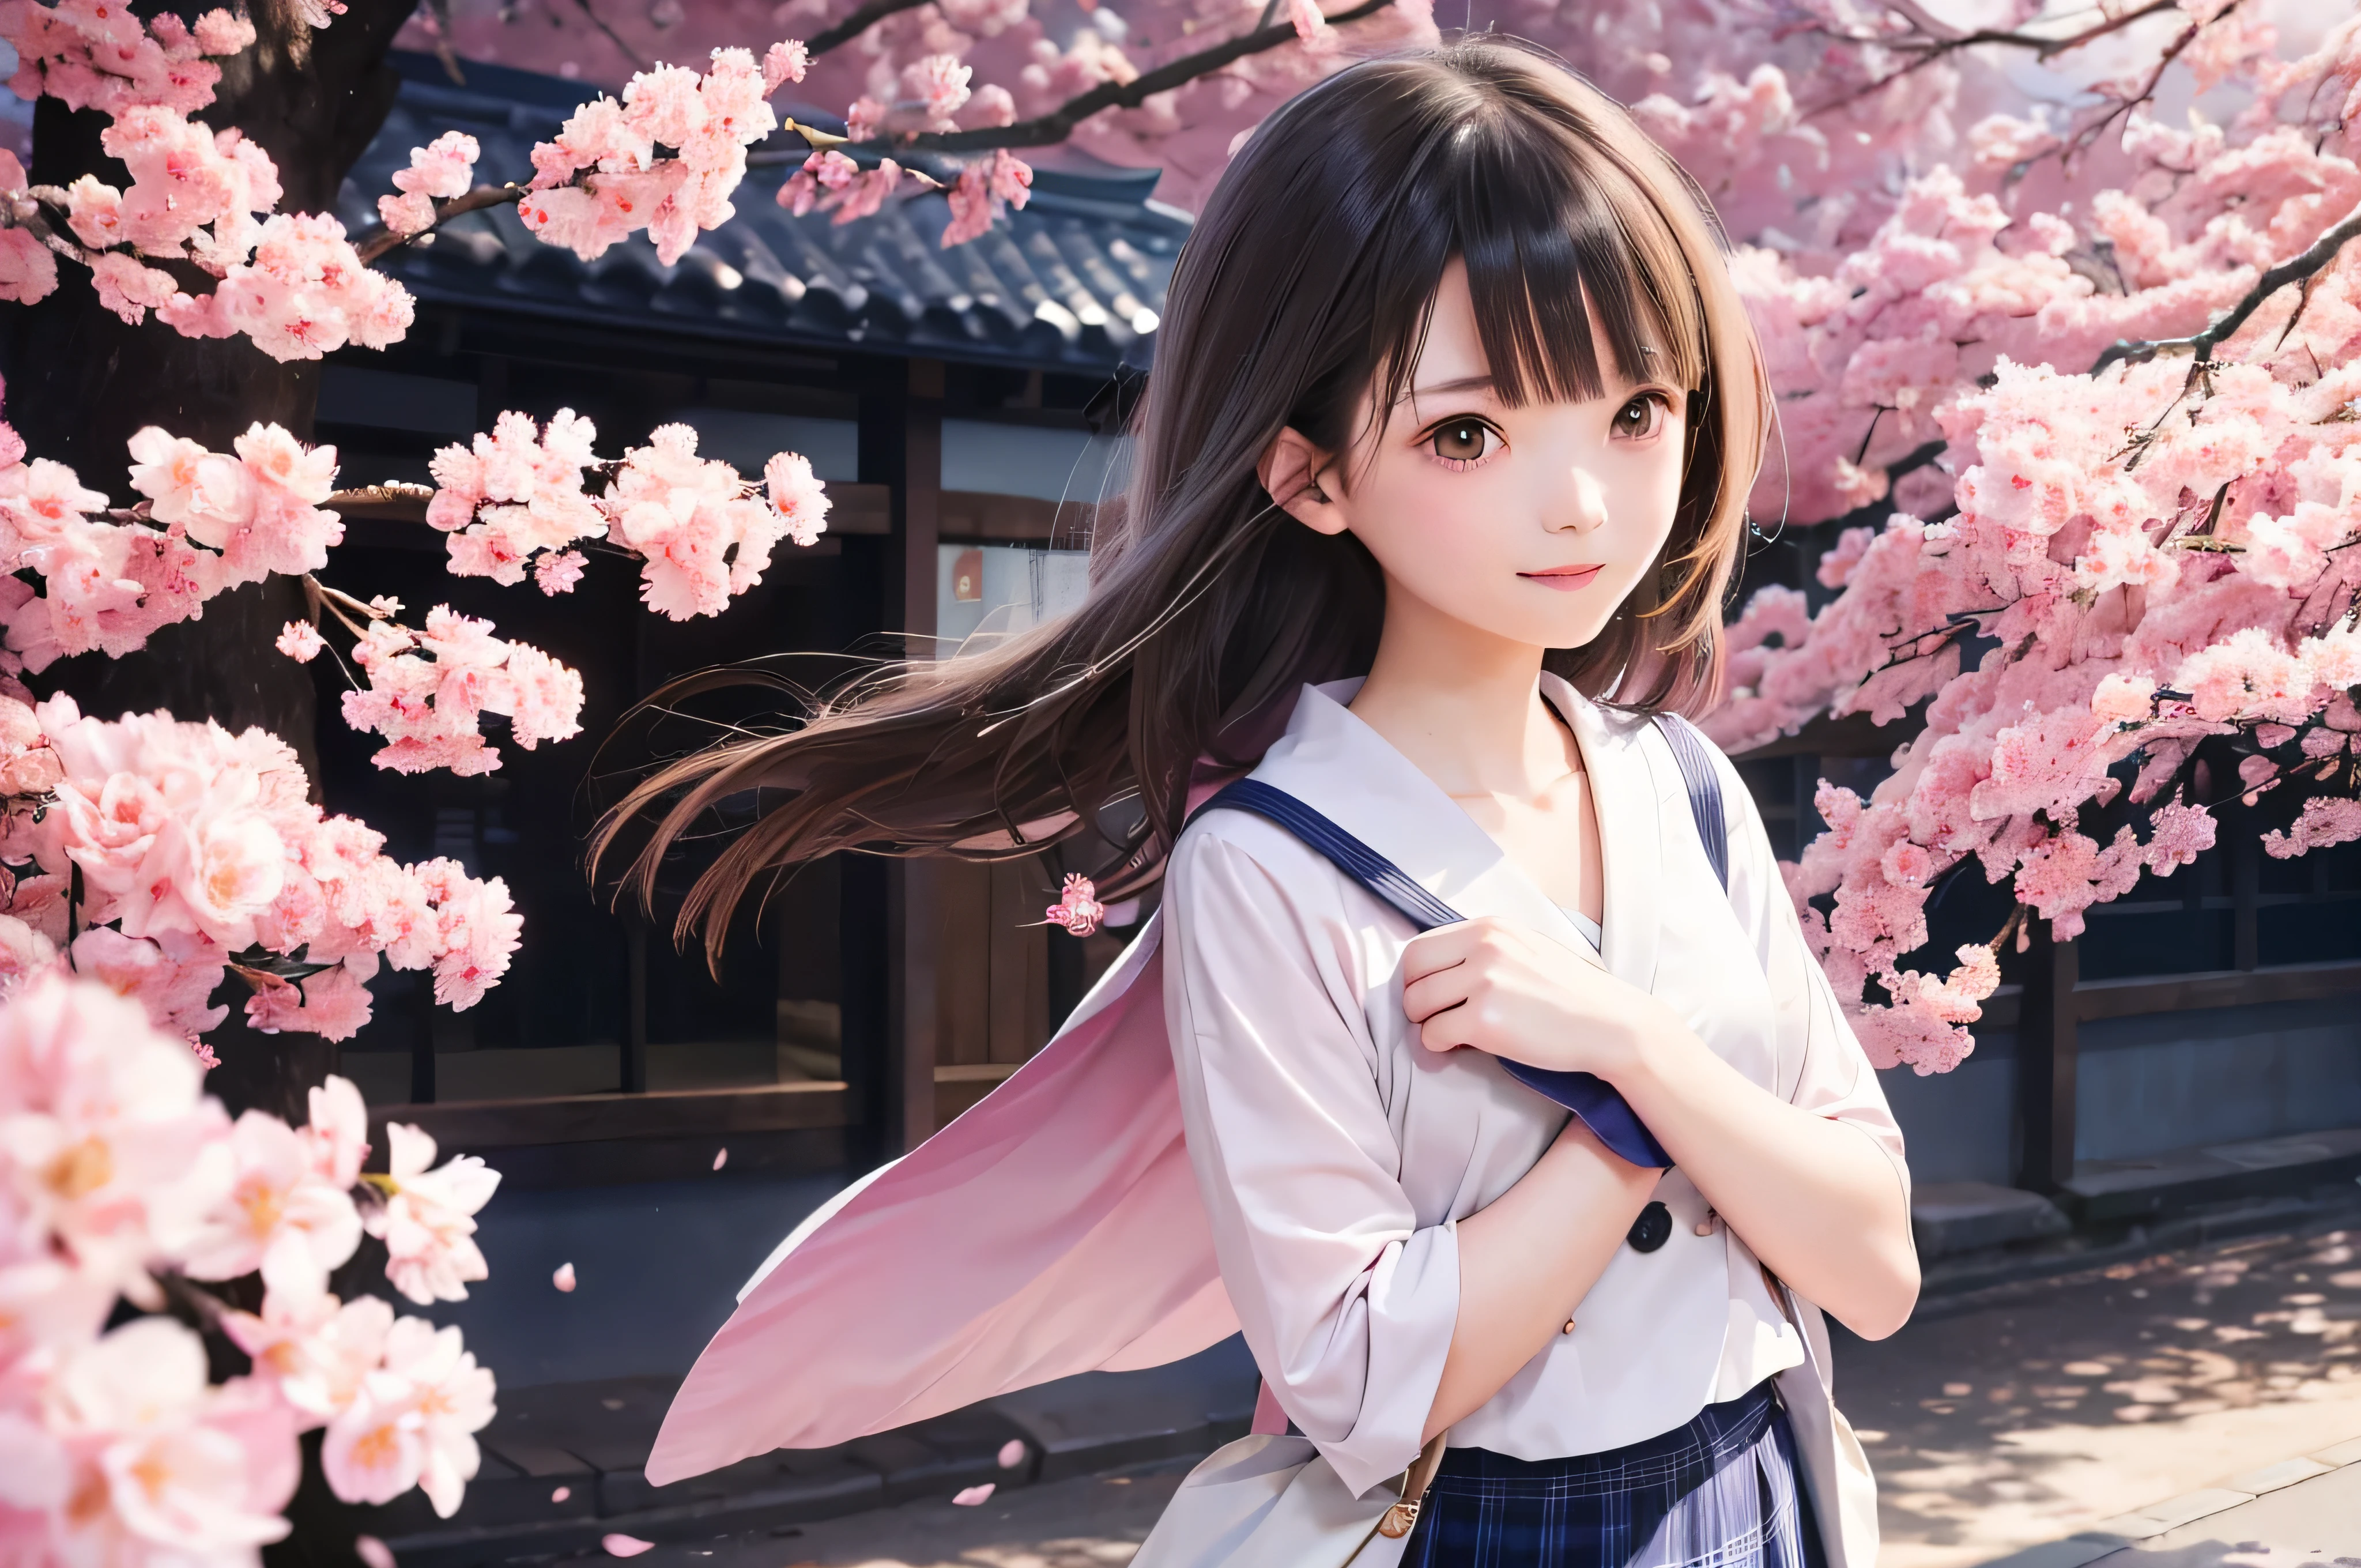 Porträt im Anime-Stil von japanischen Mittelschülerinnen, die unter Frühlingskirschblüten stehen. Sie schaut zur Seite, ihr langes braunes Haar weht im Wind. Das Mädchen hat einen ruhigen Ausdruck, Während Sie die fallenden Kirschblüten beobachten, die von sanftem rosa Licht beleuchtet werden. ihre Augen sind schwarz und leuchten, mit einem dezenten Lächeln. Sie trägt einen Japaner mit einer weißen Bluse und einer marineblauen Strickjacke。, Strahlend im sanften Frühlingssonnenlicht. Das Mädchen ist klein im Rahmen dargestellt. im Hintergrund, Es gibt verschwommene Zweige von leuchtend rosa Kirschblüten. Die Szene strahlt Ruhe aus, Hell, und friedliche Atmosphäre, Erinnert an die schönen Momente japanischer Anime.